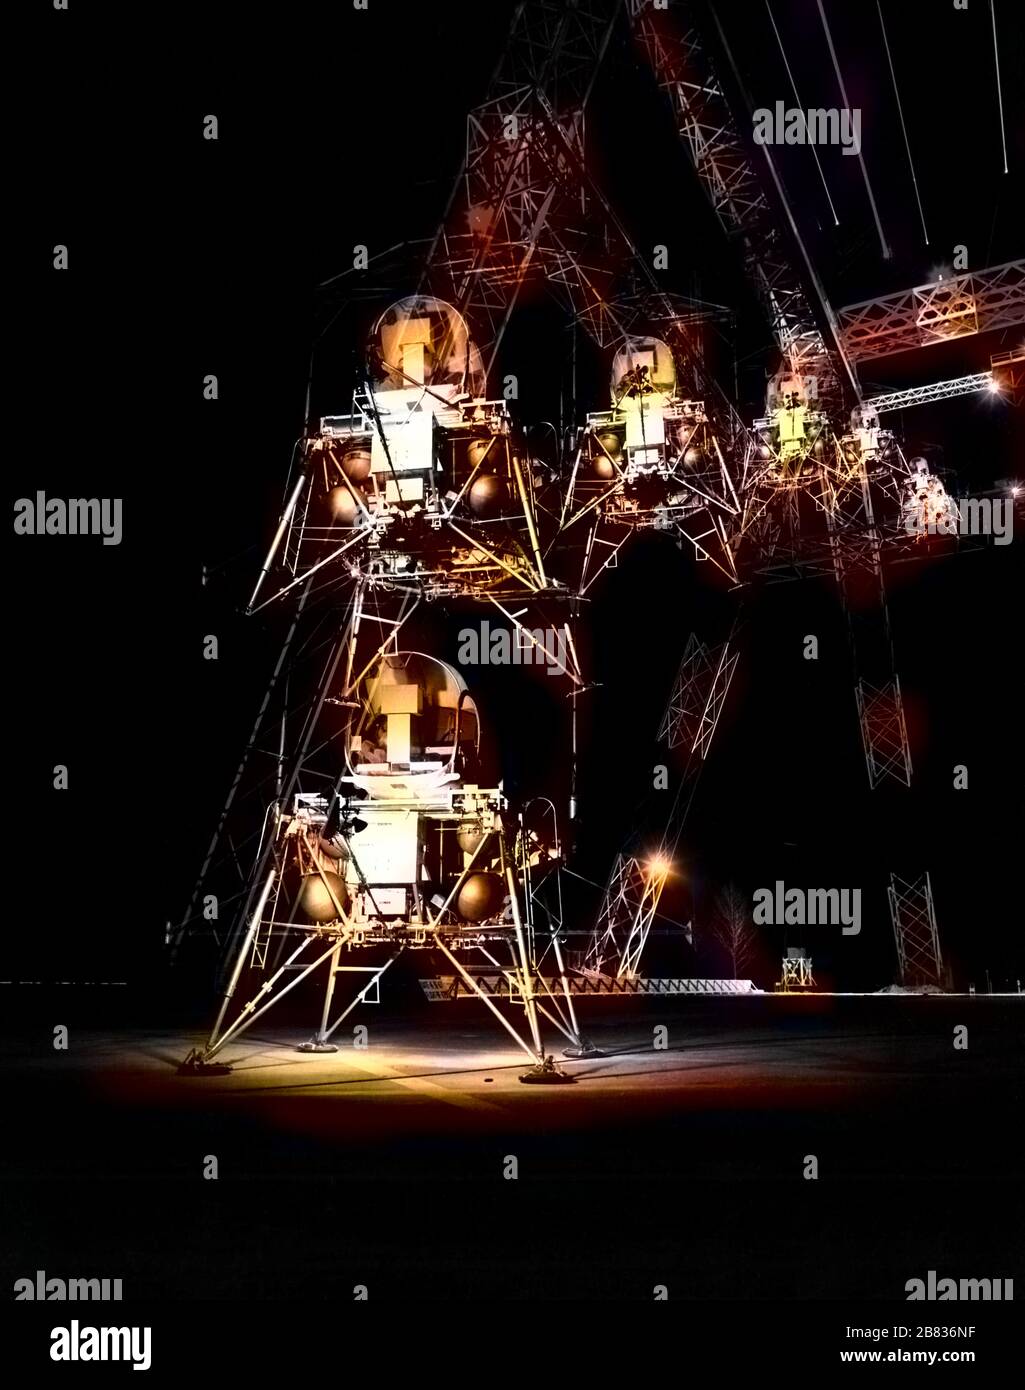 Lunar Exkursion Module Simulator (LEMS) Nachttraining am NASA Langley Research Center in Hampton, Virginia, 11. April 1967. Image Courtesy National Aeronautics and Space Administration (NASA). Hinweis: Das Bild wurde mit einem modernen Verfahren digital koloriert. Farben sind möglicherweise nicht periodengenau. () Stockfoto